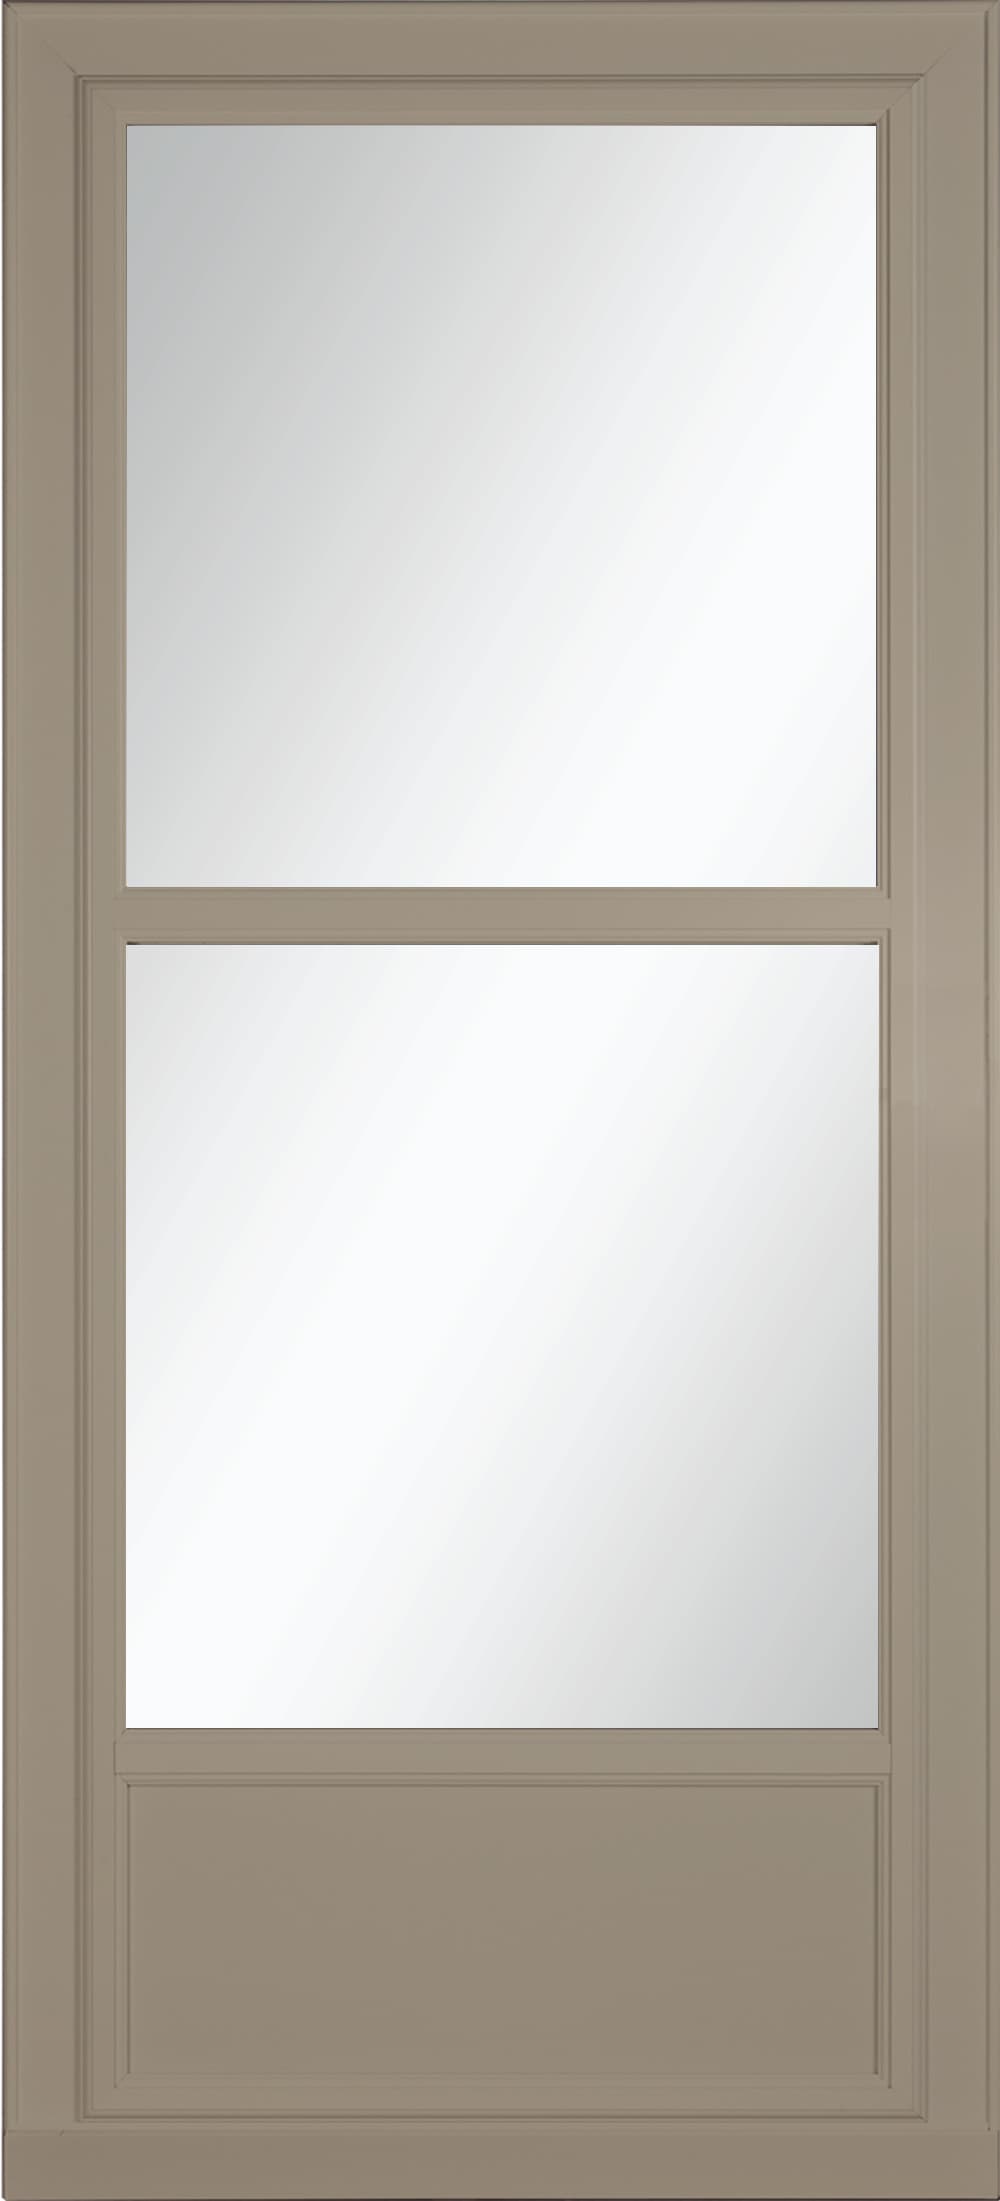 Tradewinds Selection 36-in x 81-in Sandstone Mid-view Retractable Screen Aluminum Storm Door in Brown | - LARSON 14606092